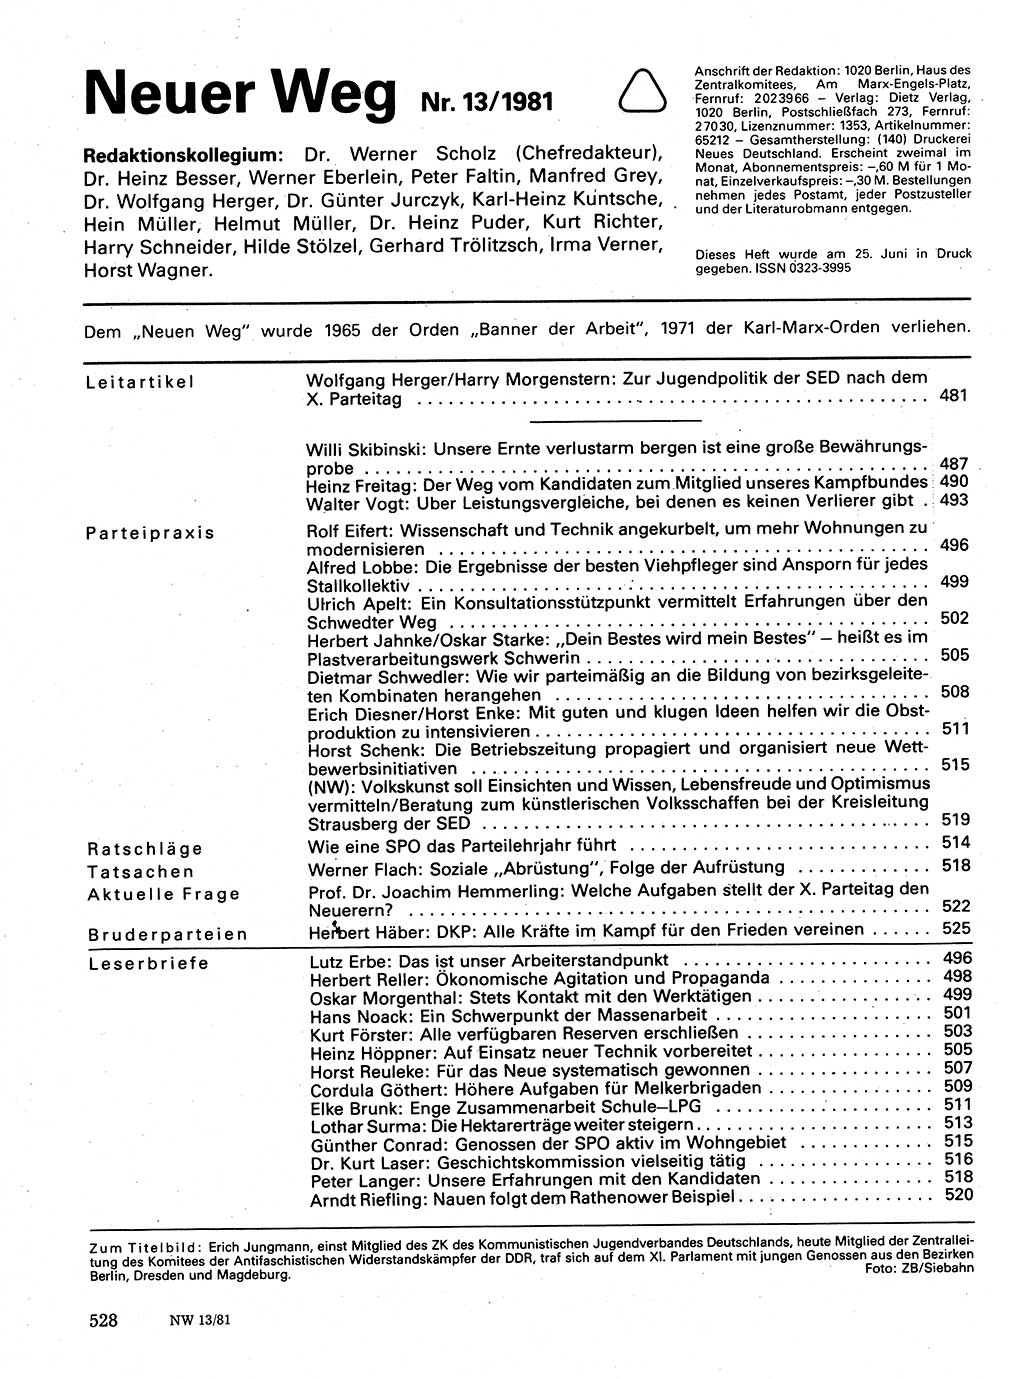 Neuer Weg (NW), Organ des Zentralkomitees (ZK) der SED (Sozialistische Einheitspartei Deutschlands) für Fragen des Parteilebens, 36. Jahrgang [Deutsche Demokratische Republik (DDR)] 1981, Seite 528 (NW ZK SED DDR 1981, S. 528)